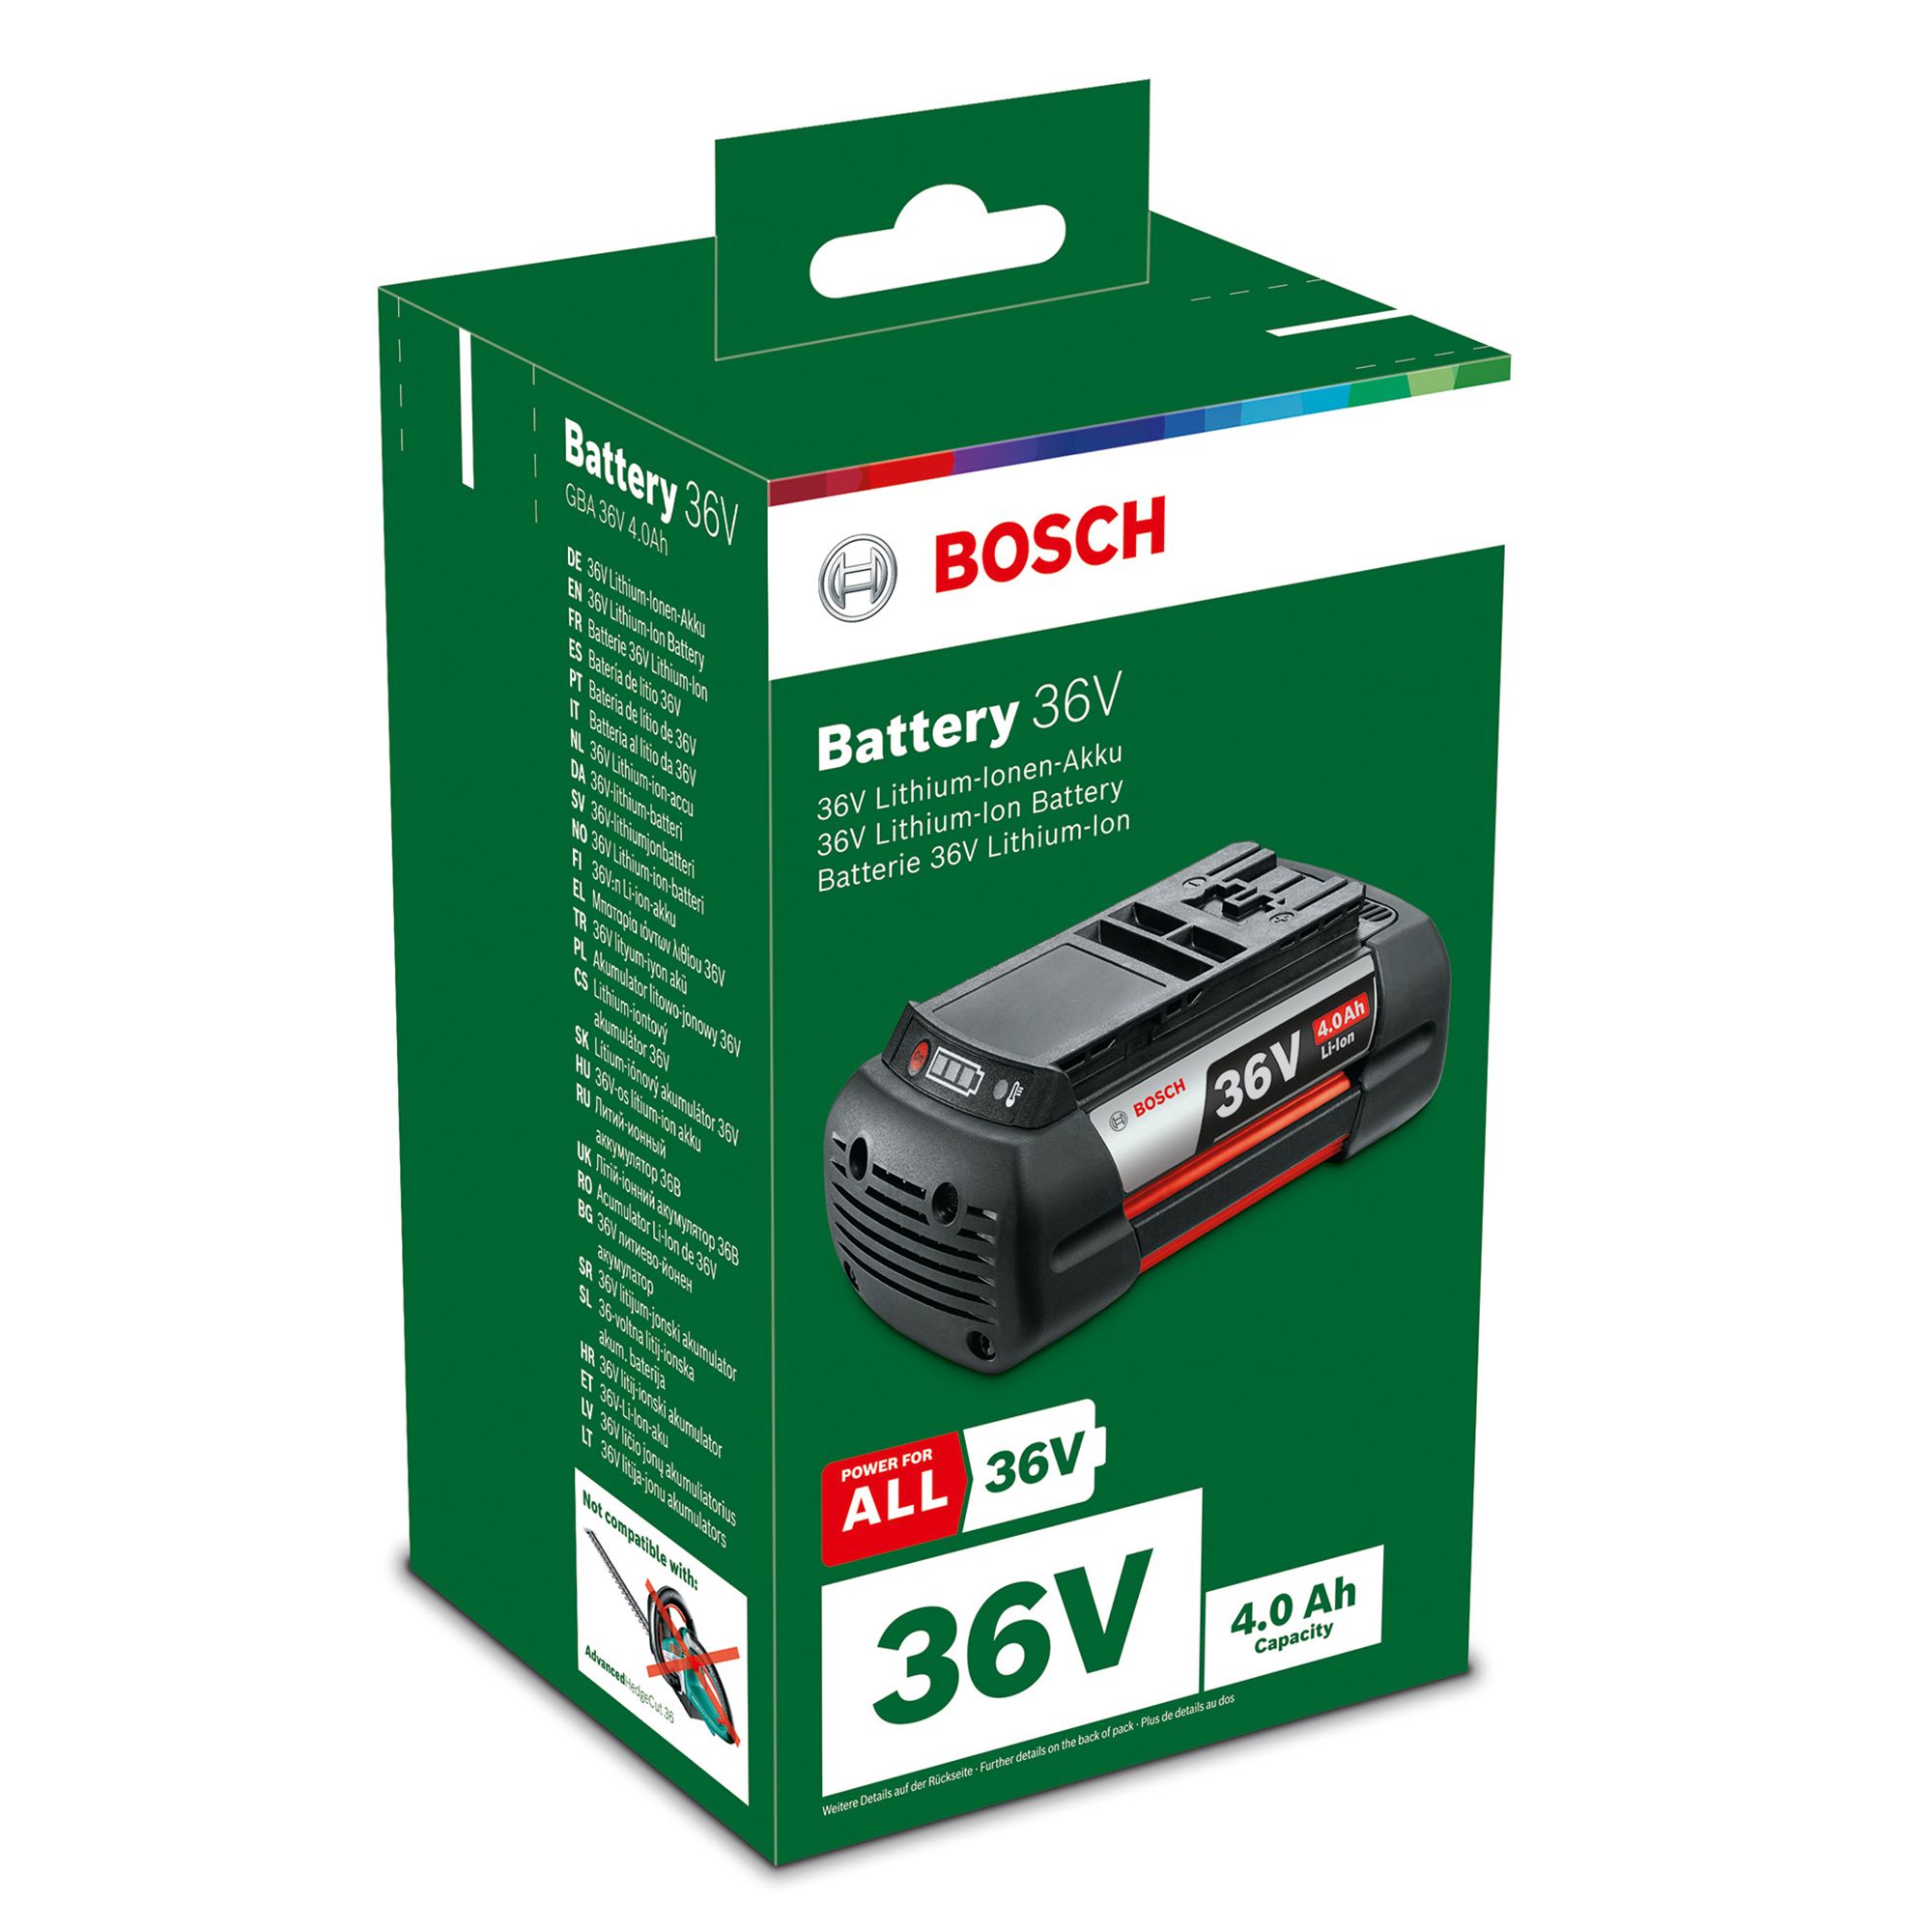 Bosch High Power batterie 36V Li-Ion 4Ah